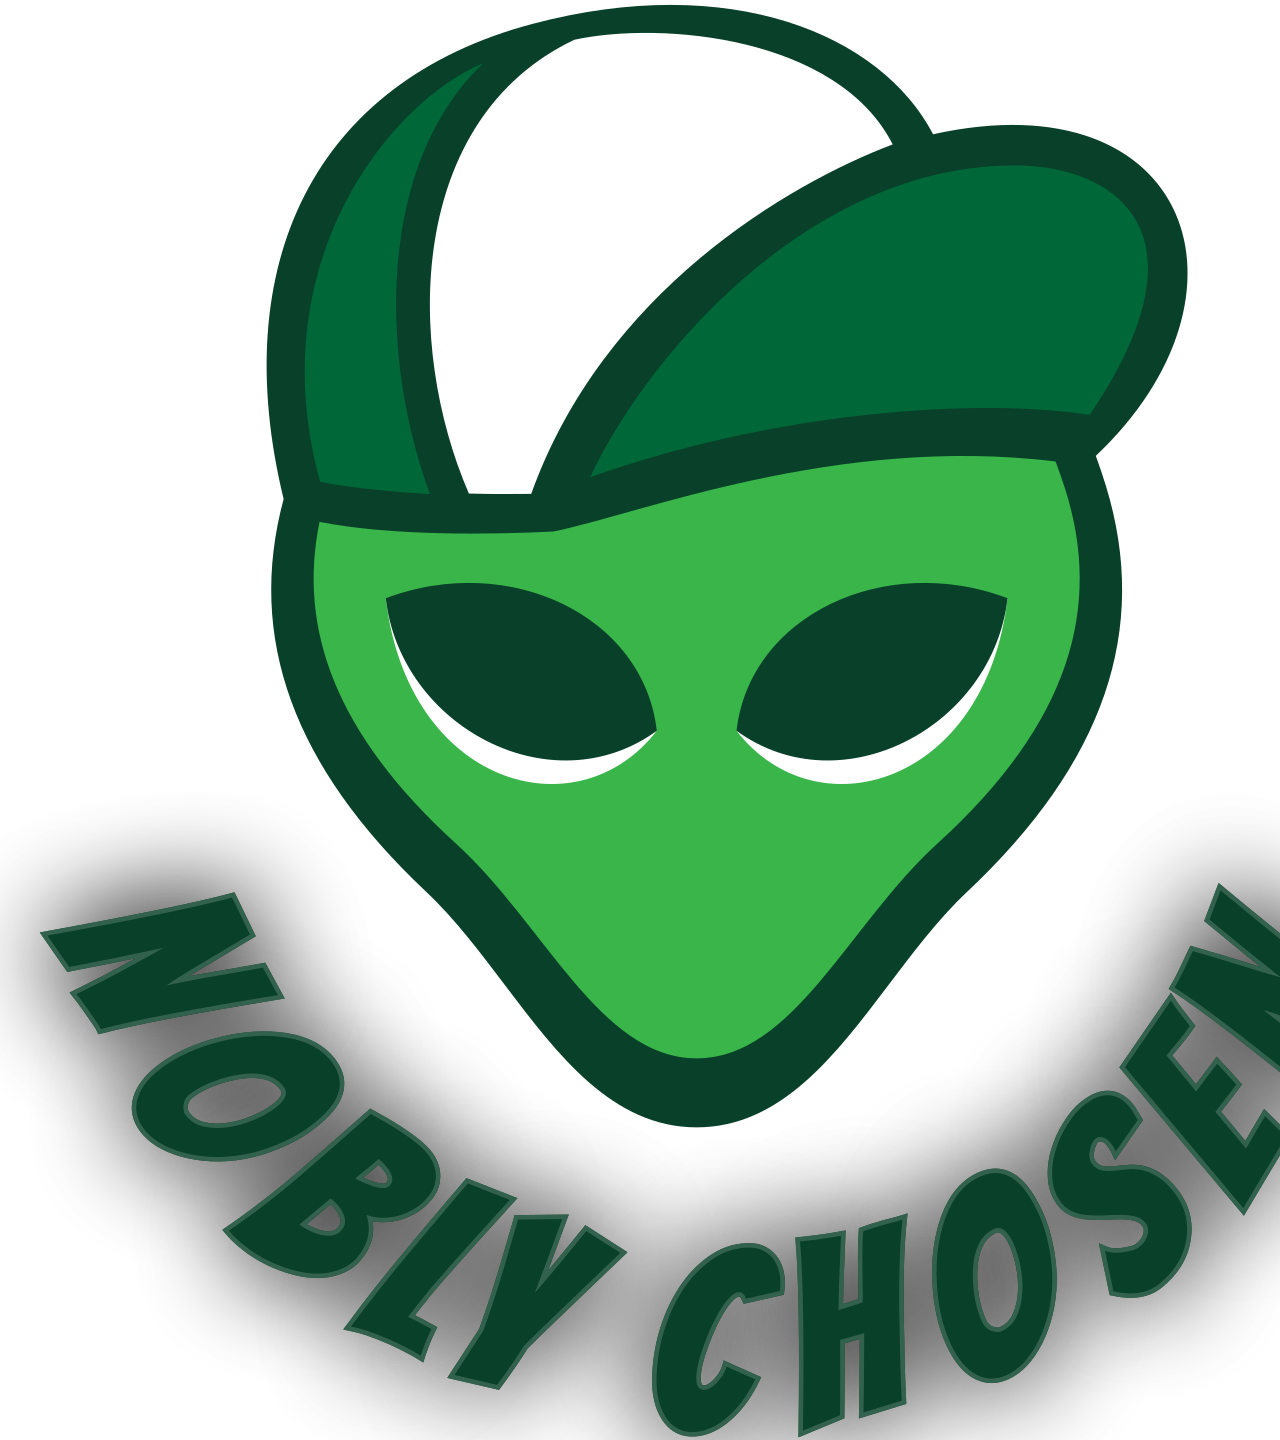 Nobly Chosen 's logo